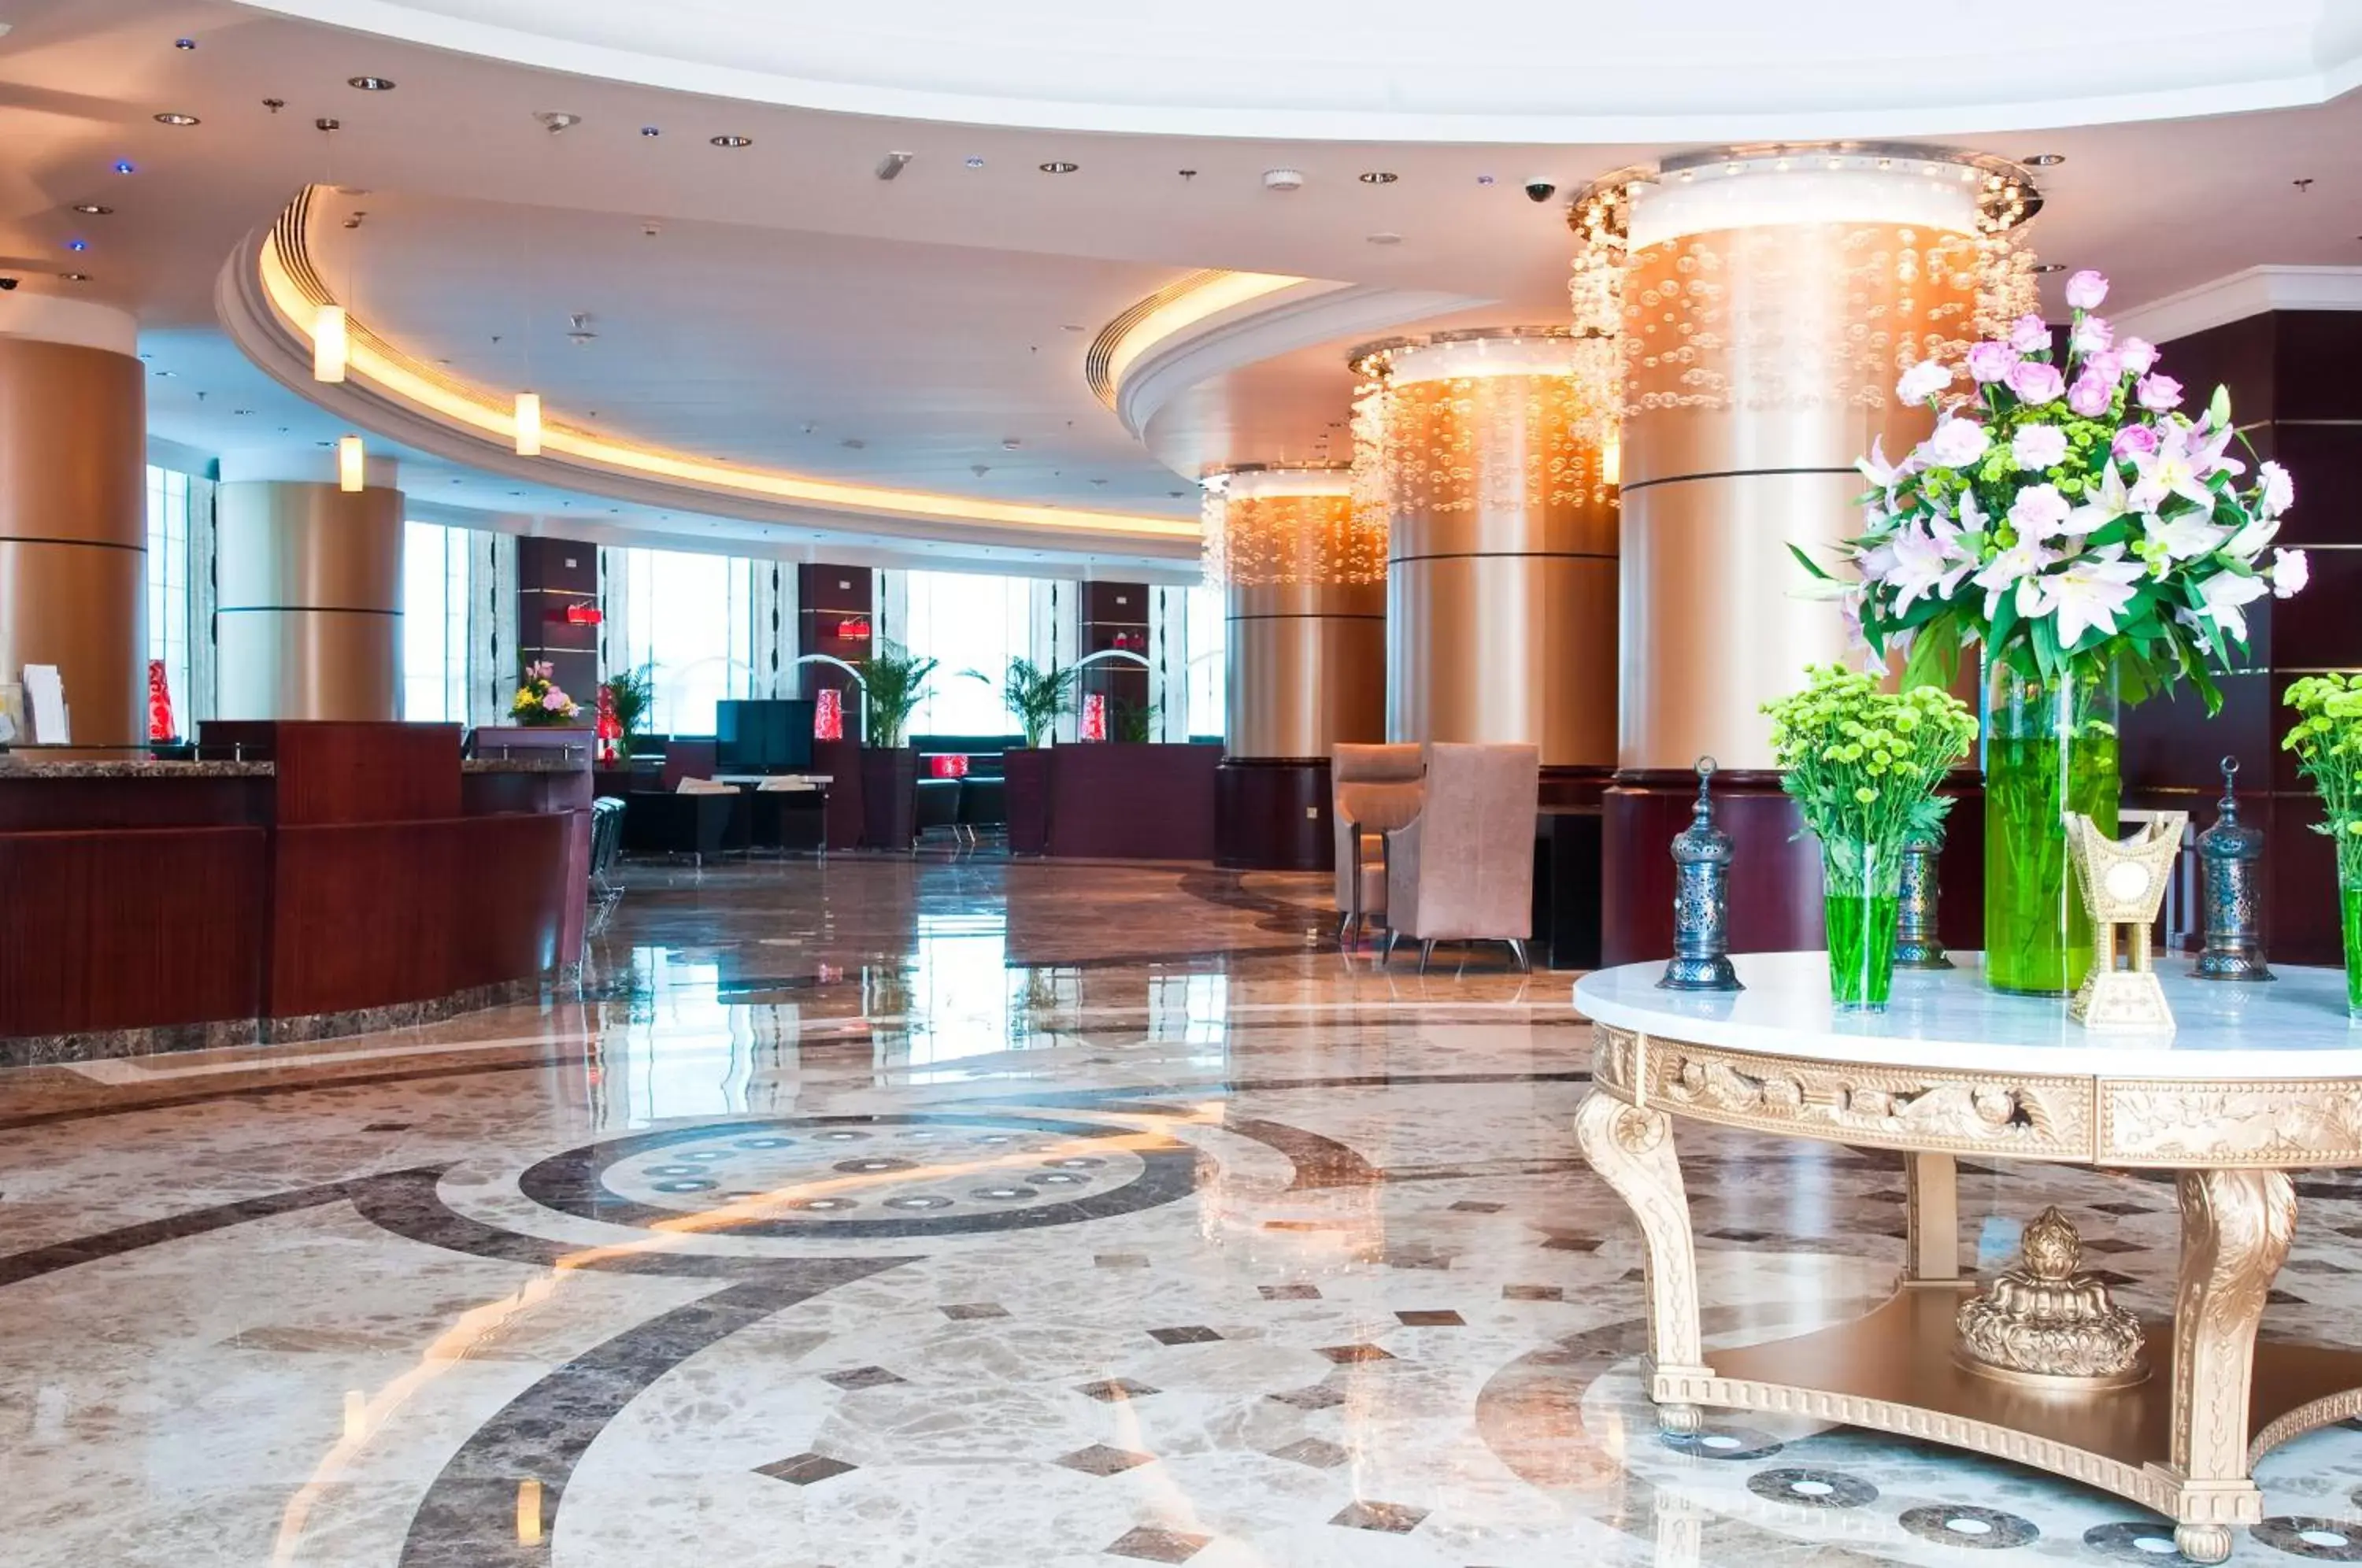 Lobby or reception, Lobby/Reception in Retaj Al Rayyan